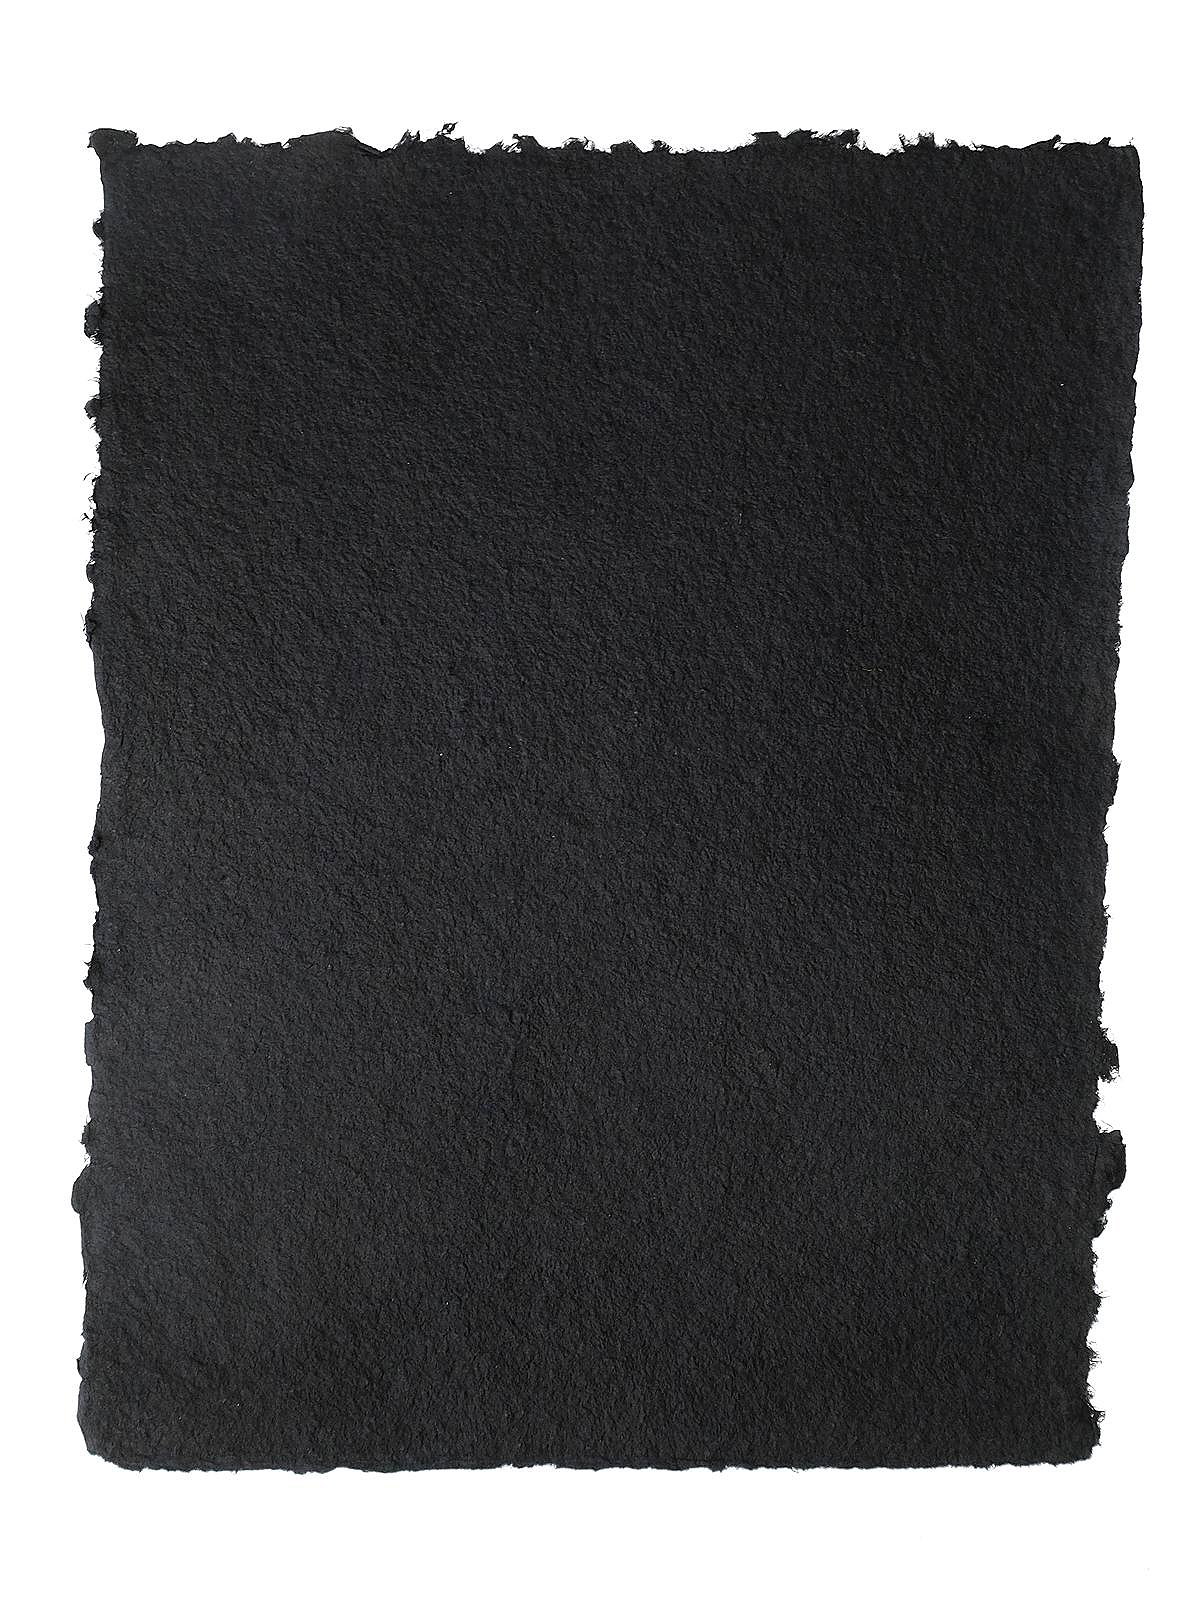 Scrapbook Customs Black and Gray Watercolor Paper